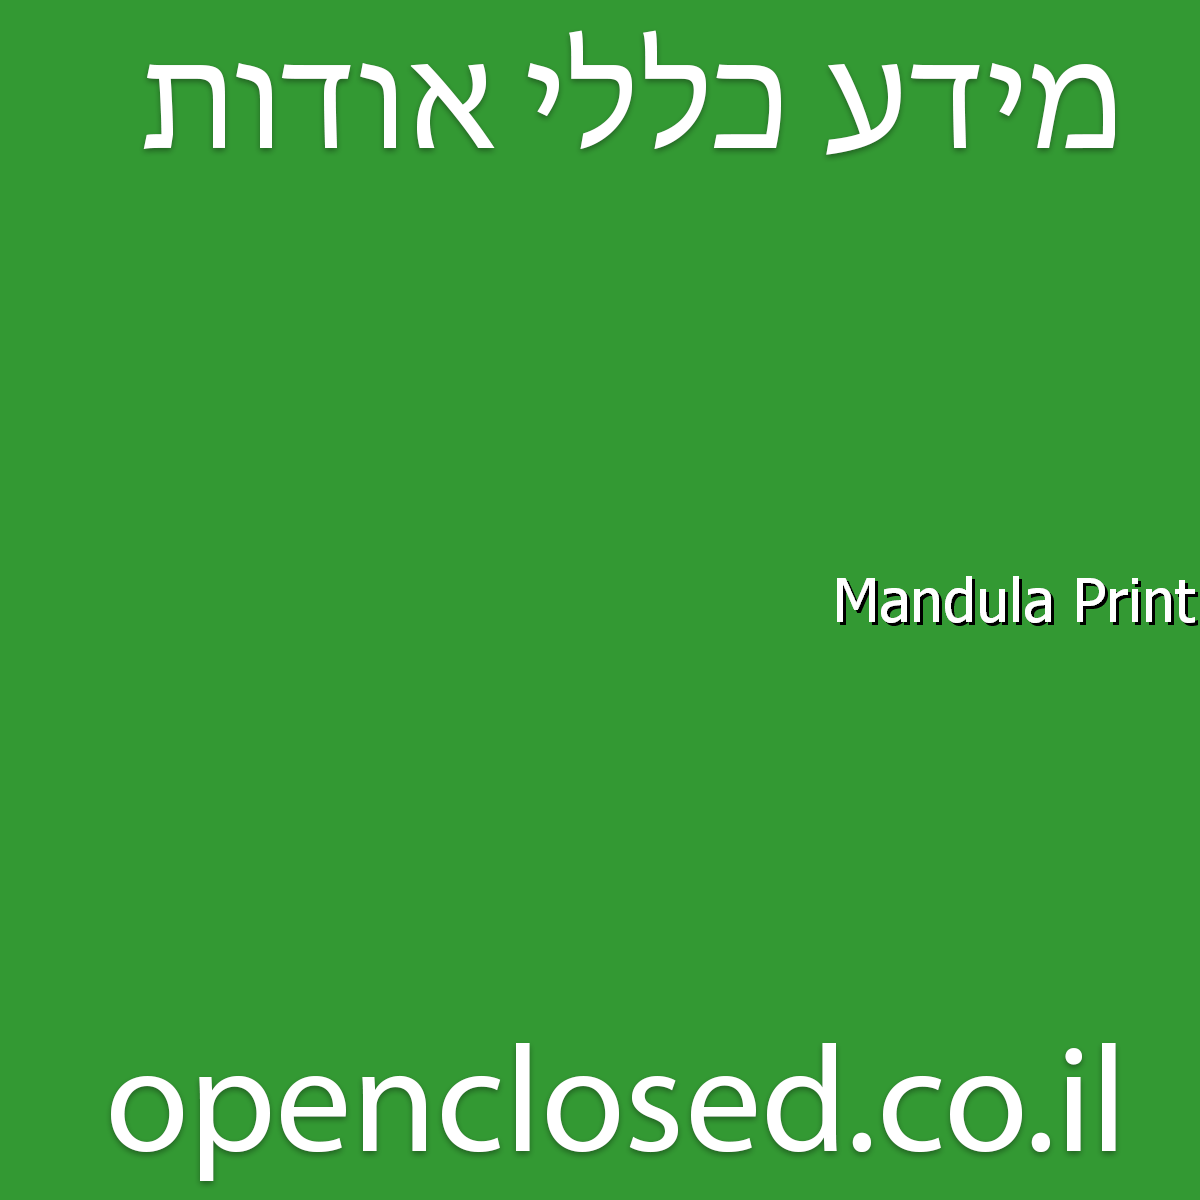 Mandula Print